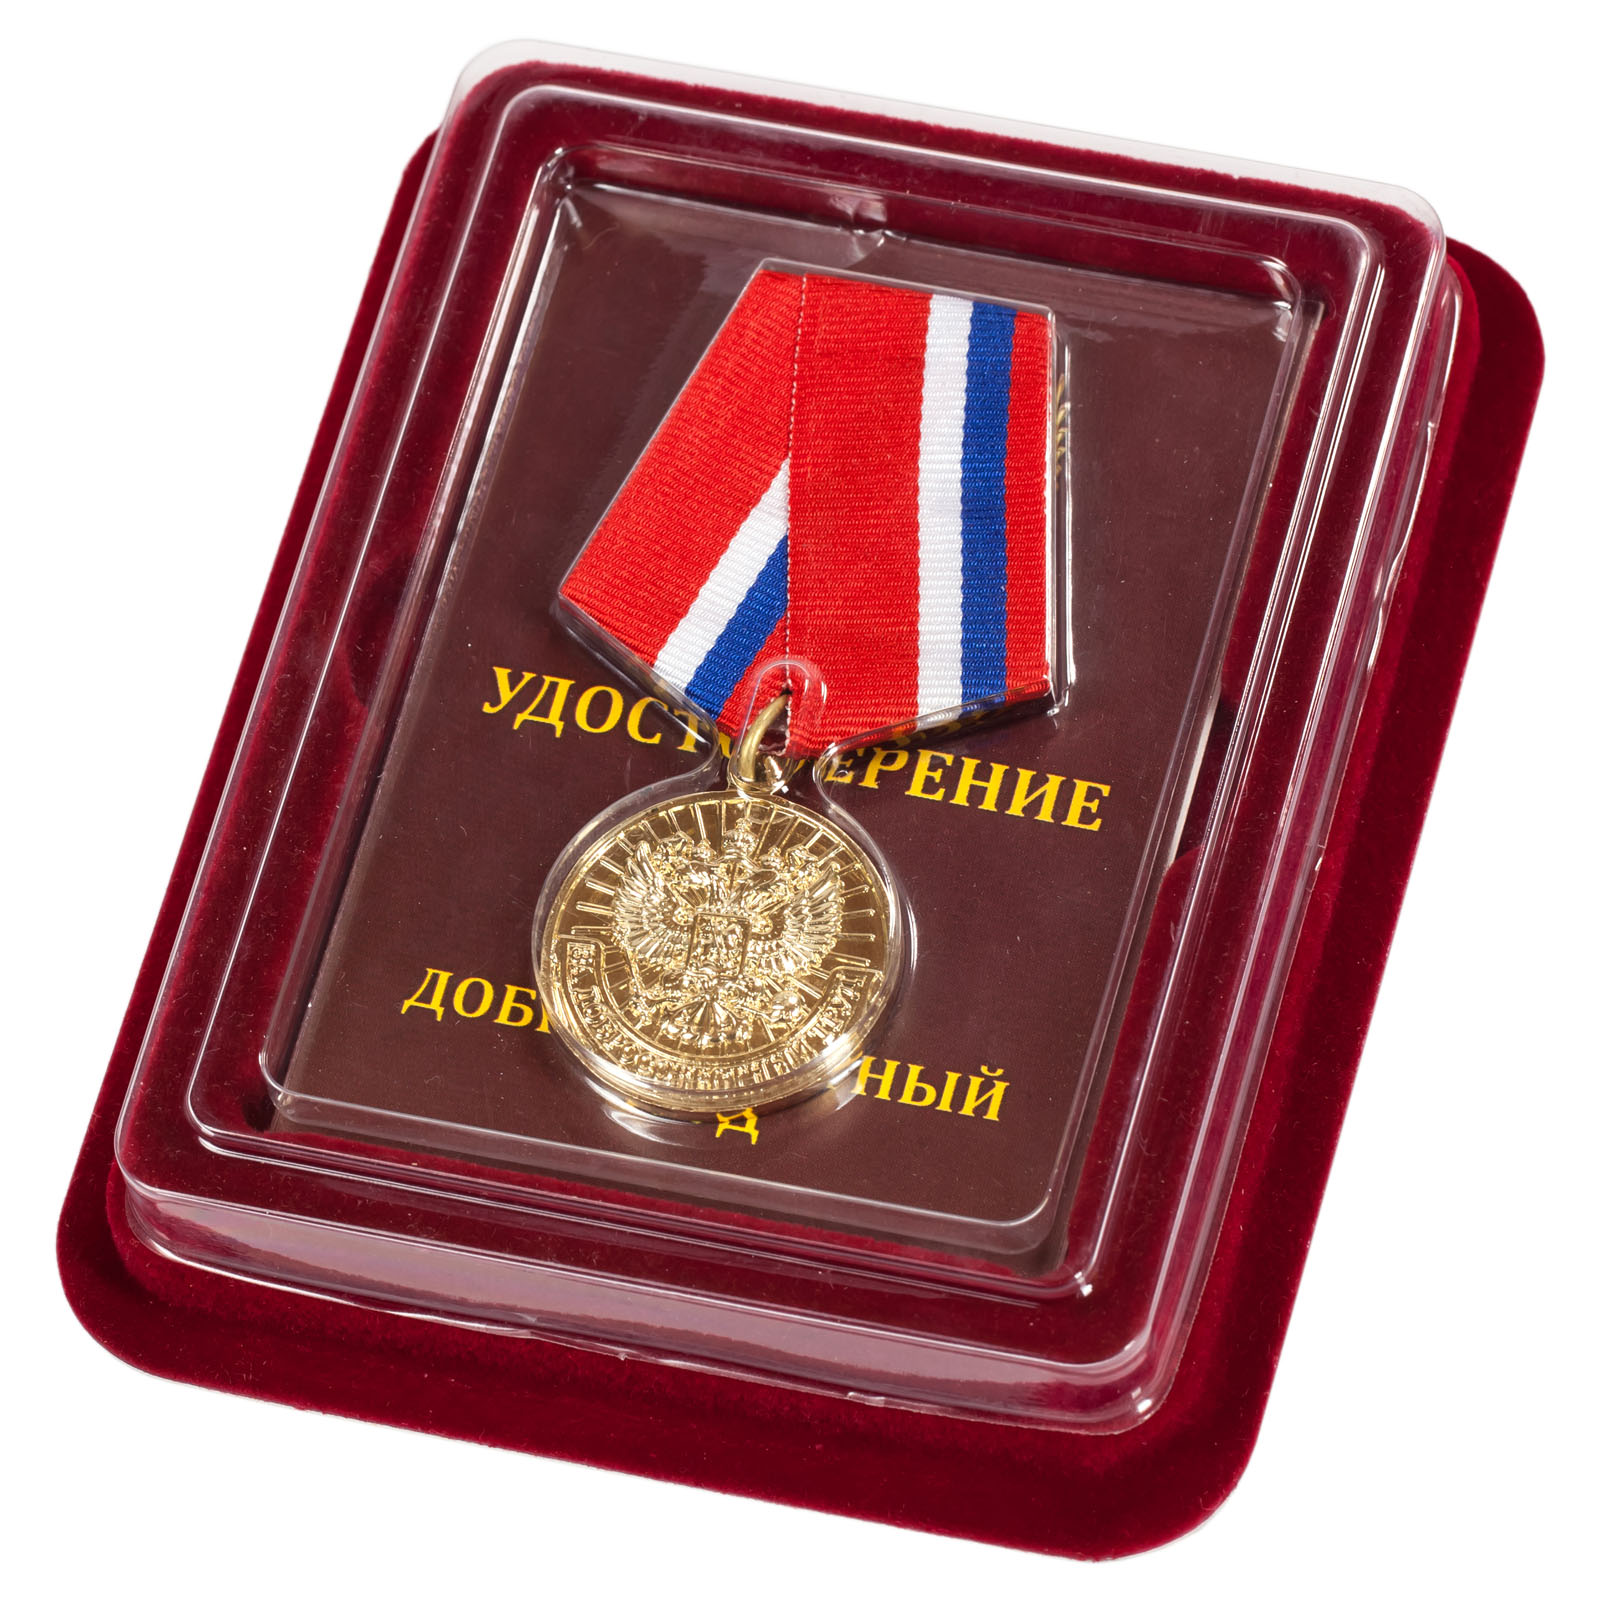 Купить медаль "За добросовестный труд" в наградном футляре